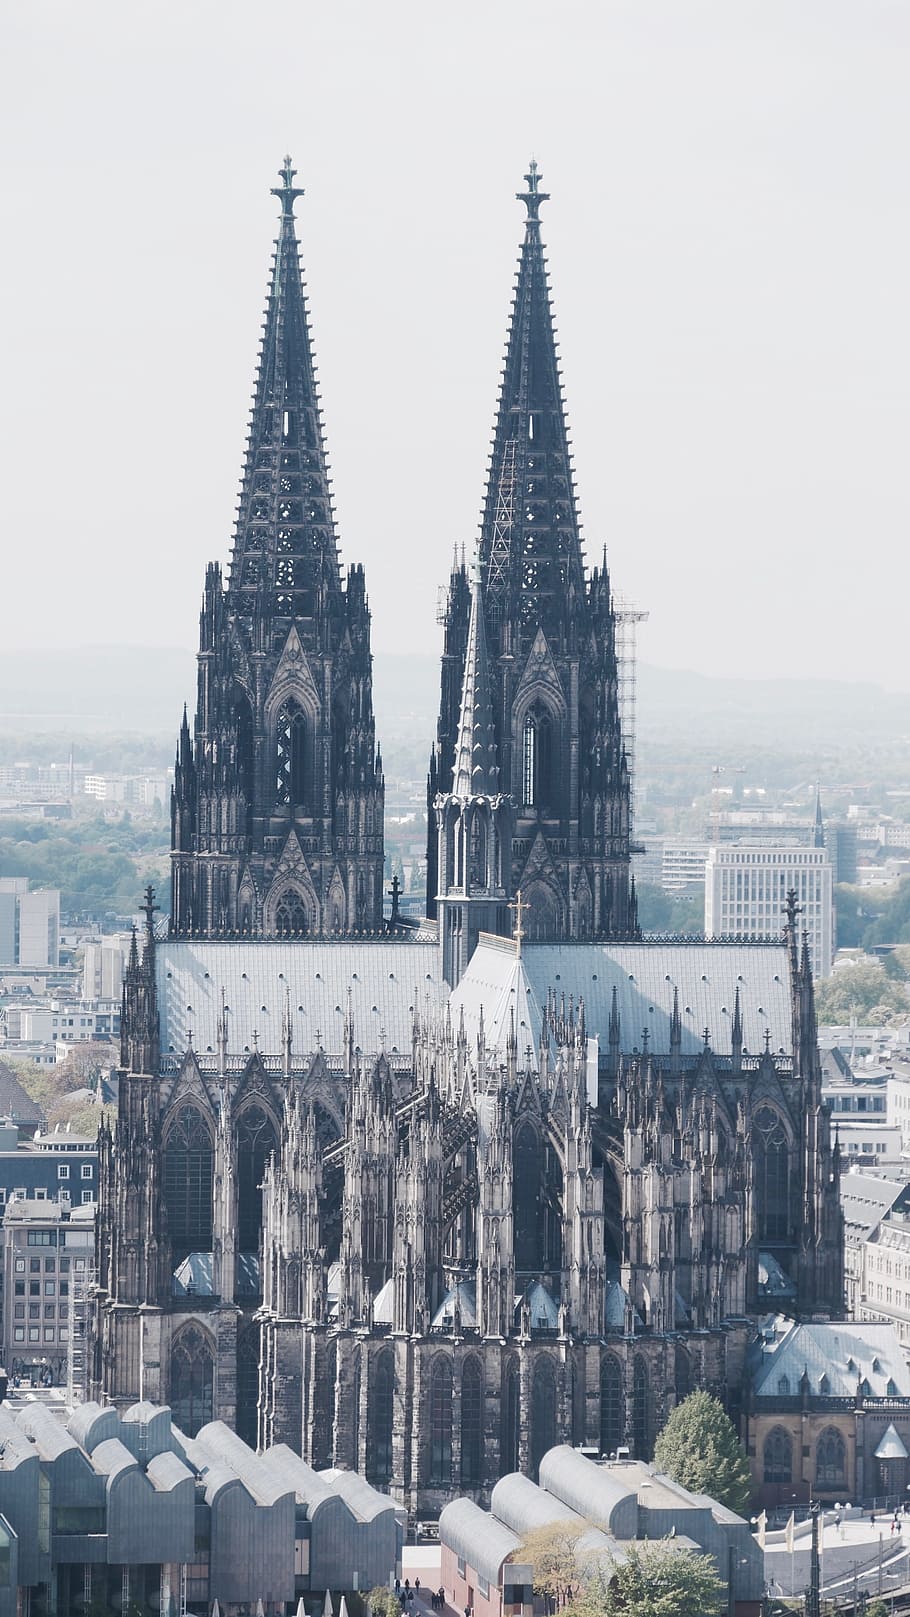 Dom, Catedral de Colônia, Catedral, Igreja, Colônia, Céu, Marco, Alemanha, Arquitetura, Estilo gótico